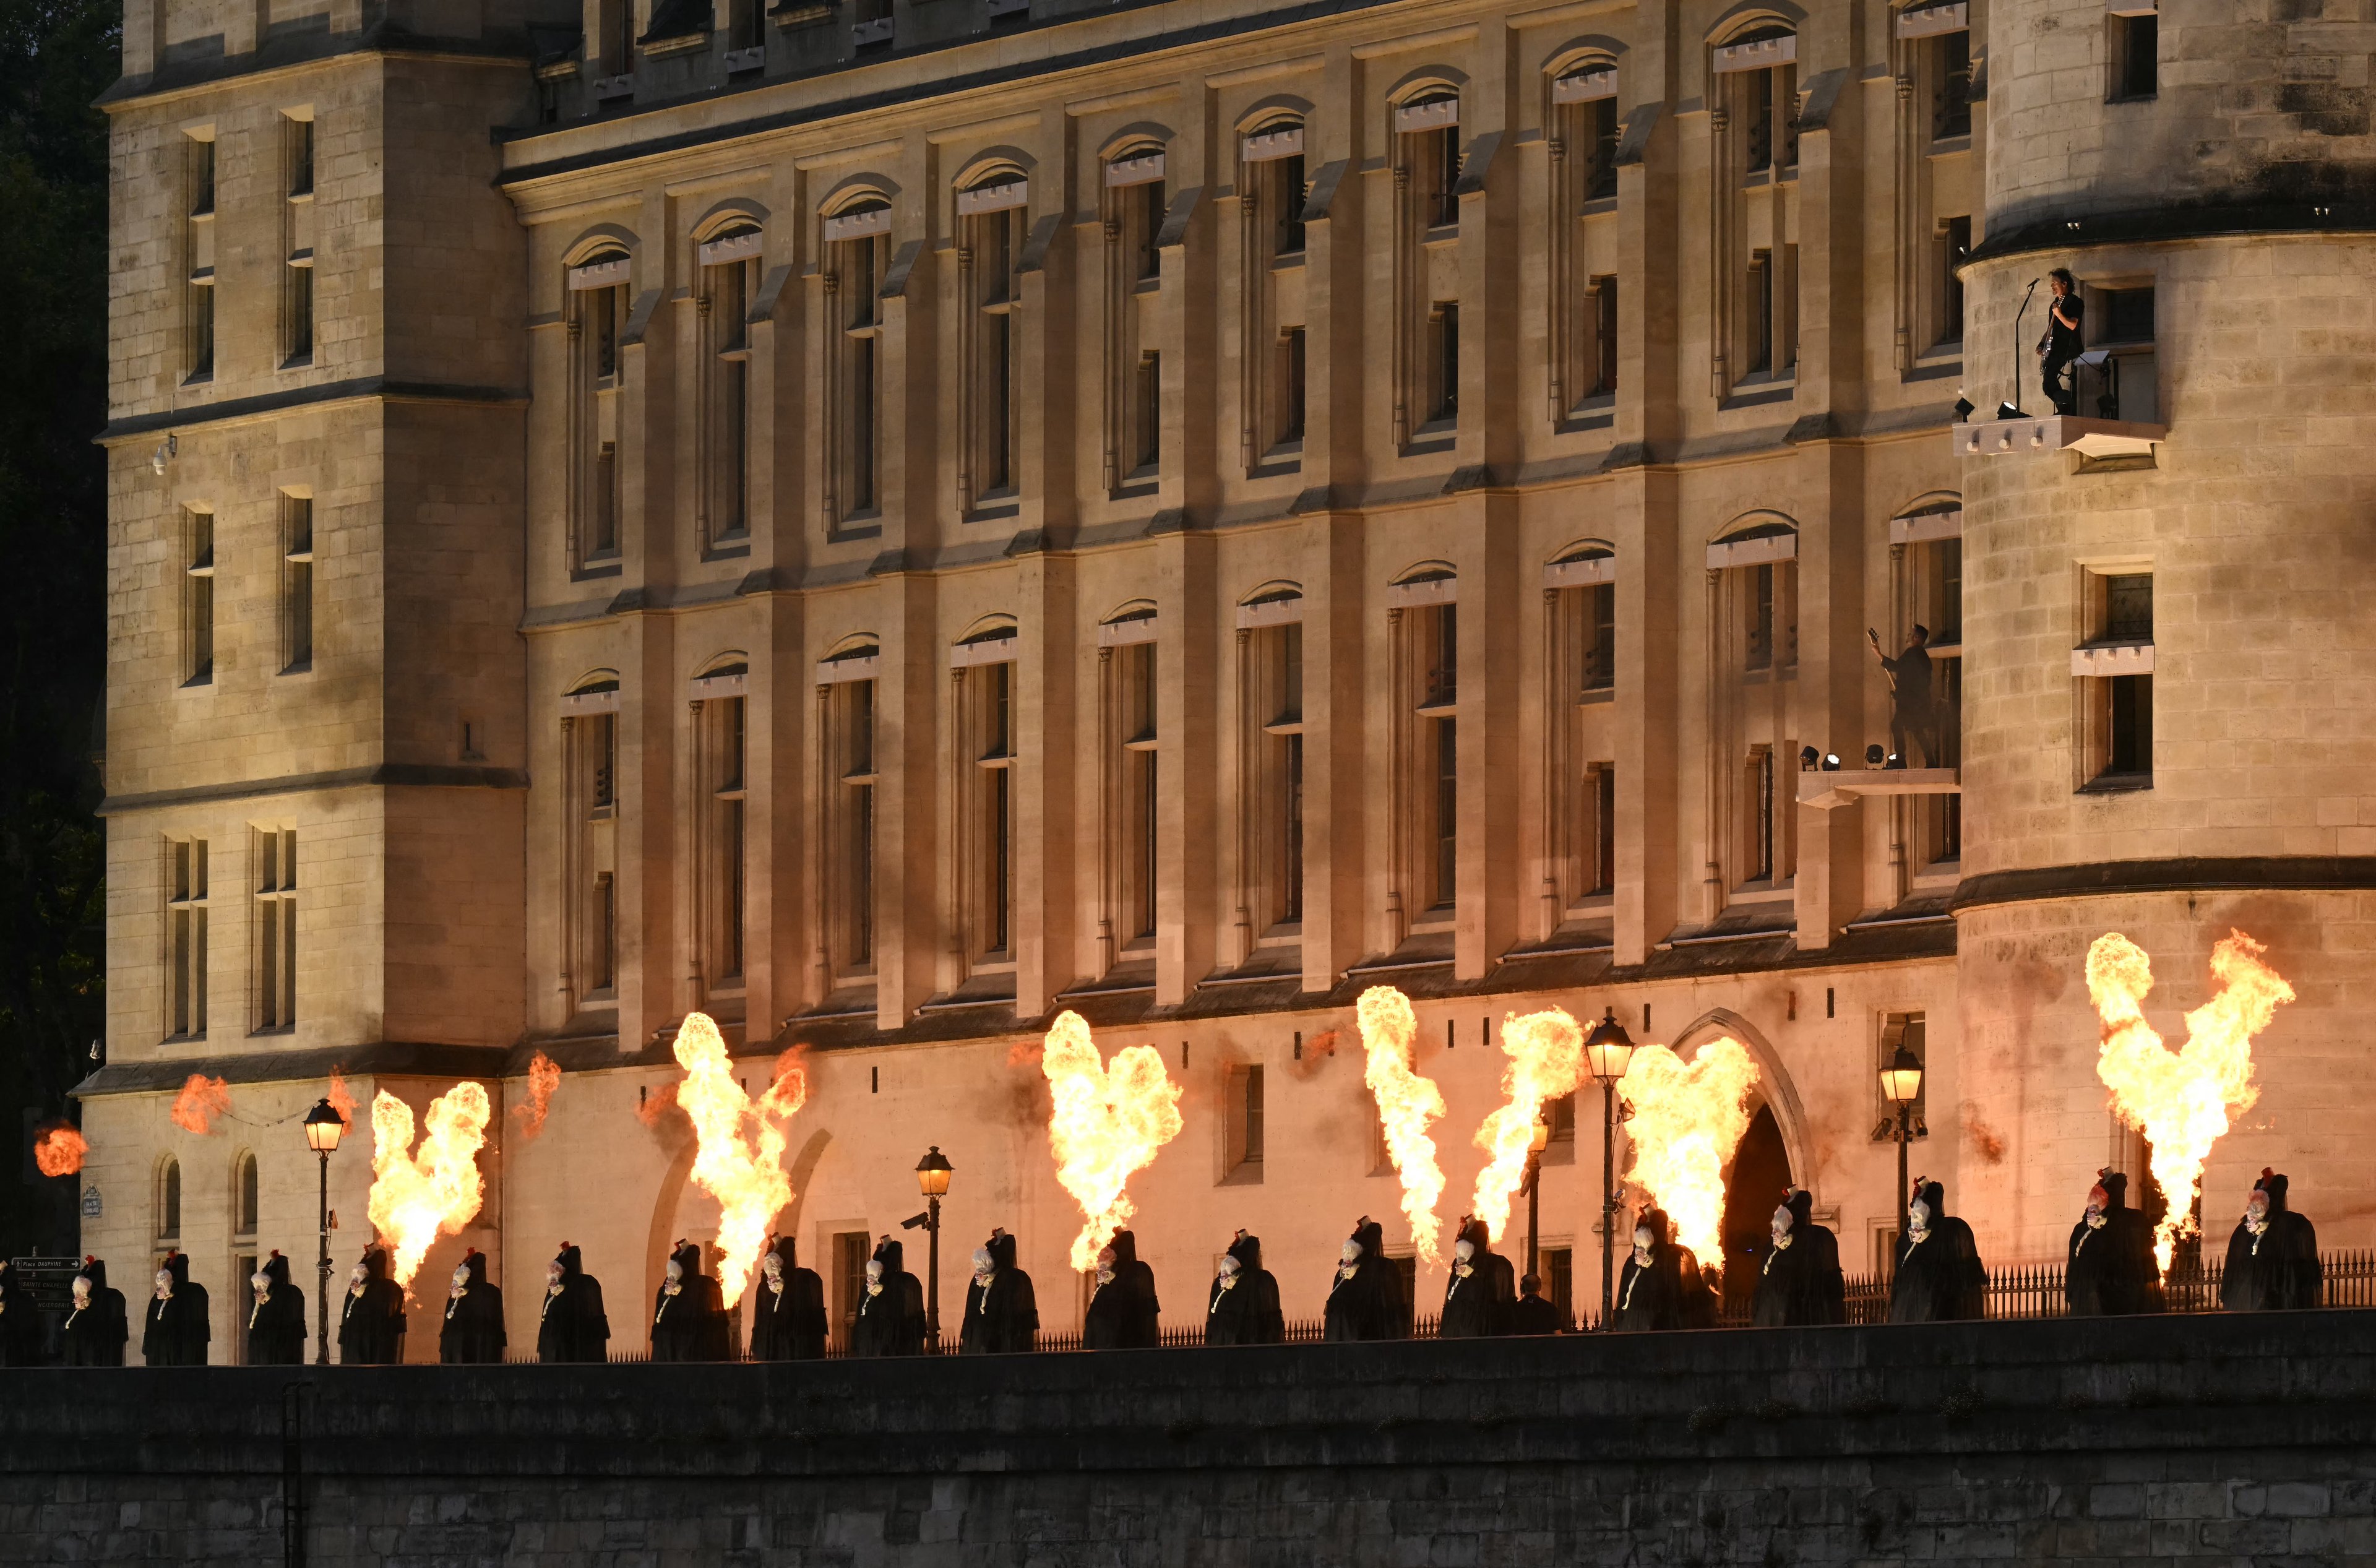 Figuras sem cabeça representando a rainha Maria Antonieta do século XVIII se alinham com shows de fogo ao longo da margem do rio Sena, do lado de fora da Conciergerie, onde a rainha foi mantida em cativeiro durante a Revolução Francesa, durante a cerimônia de abertura das Olimpíadas de Paris 2024